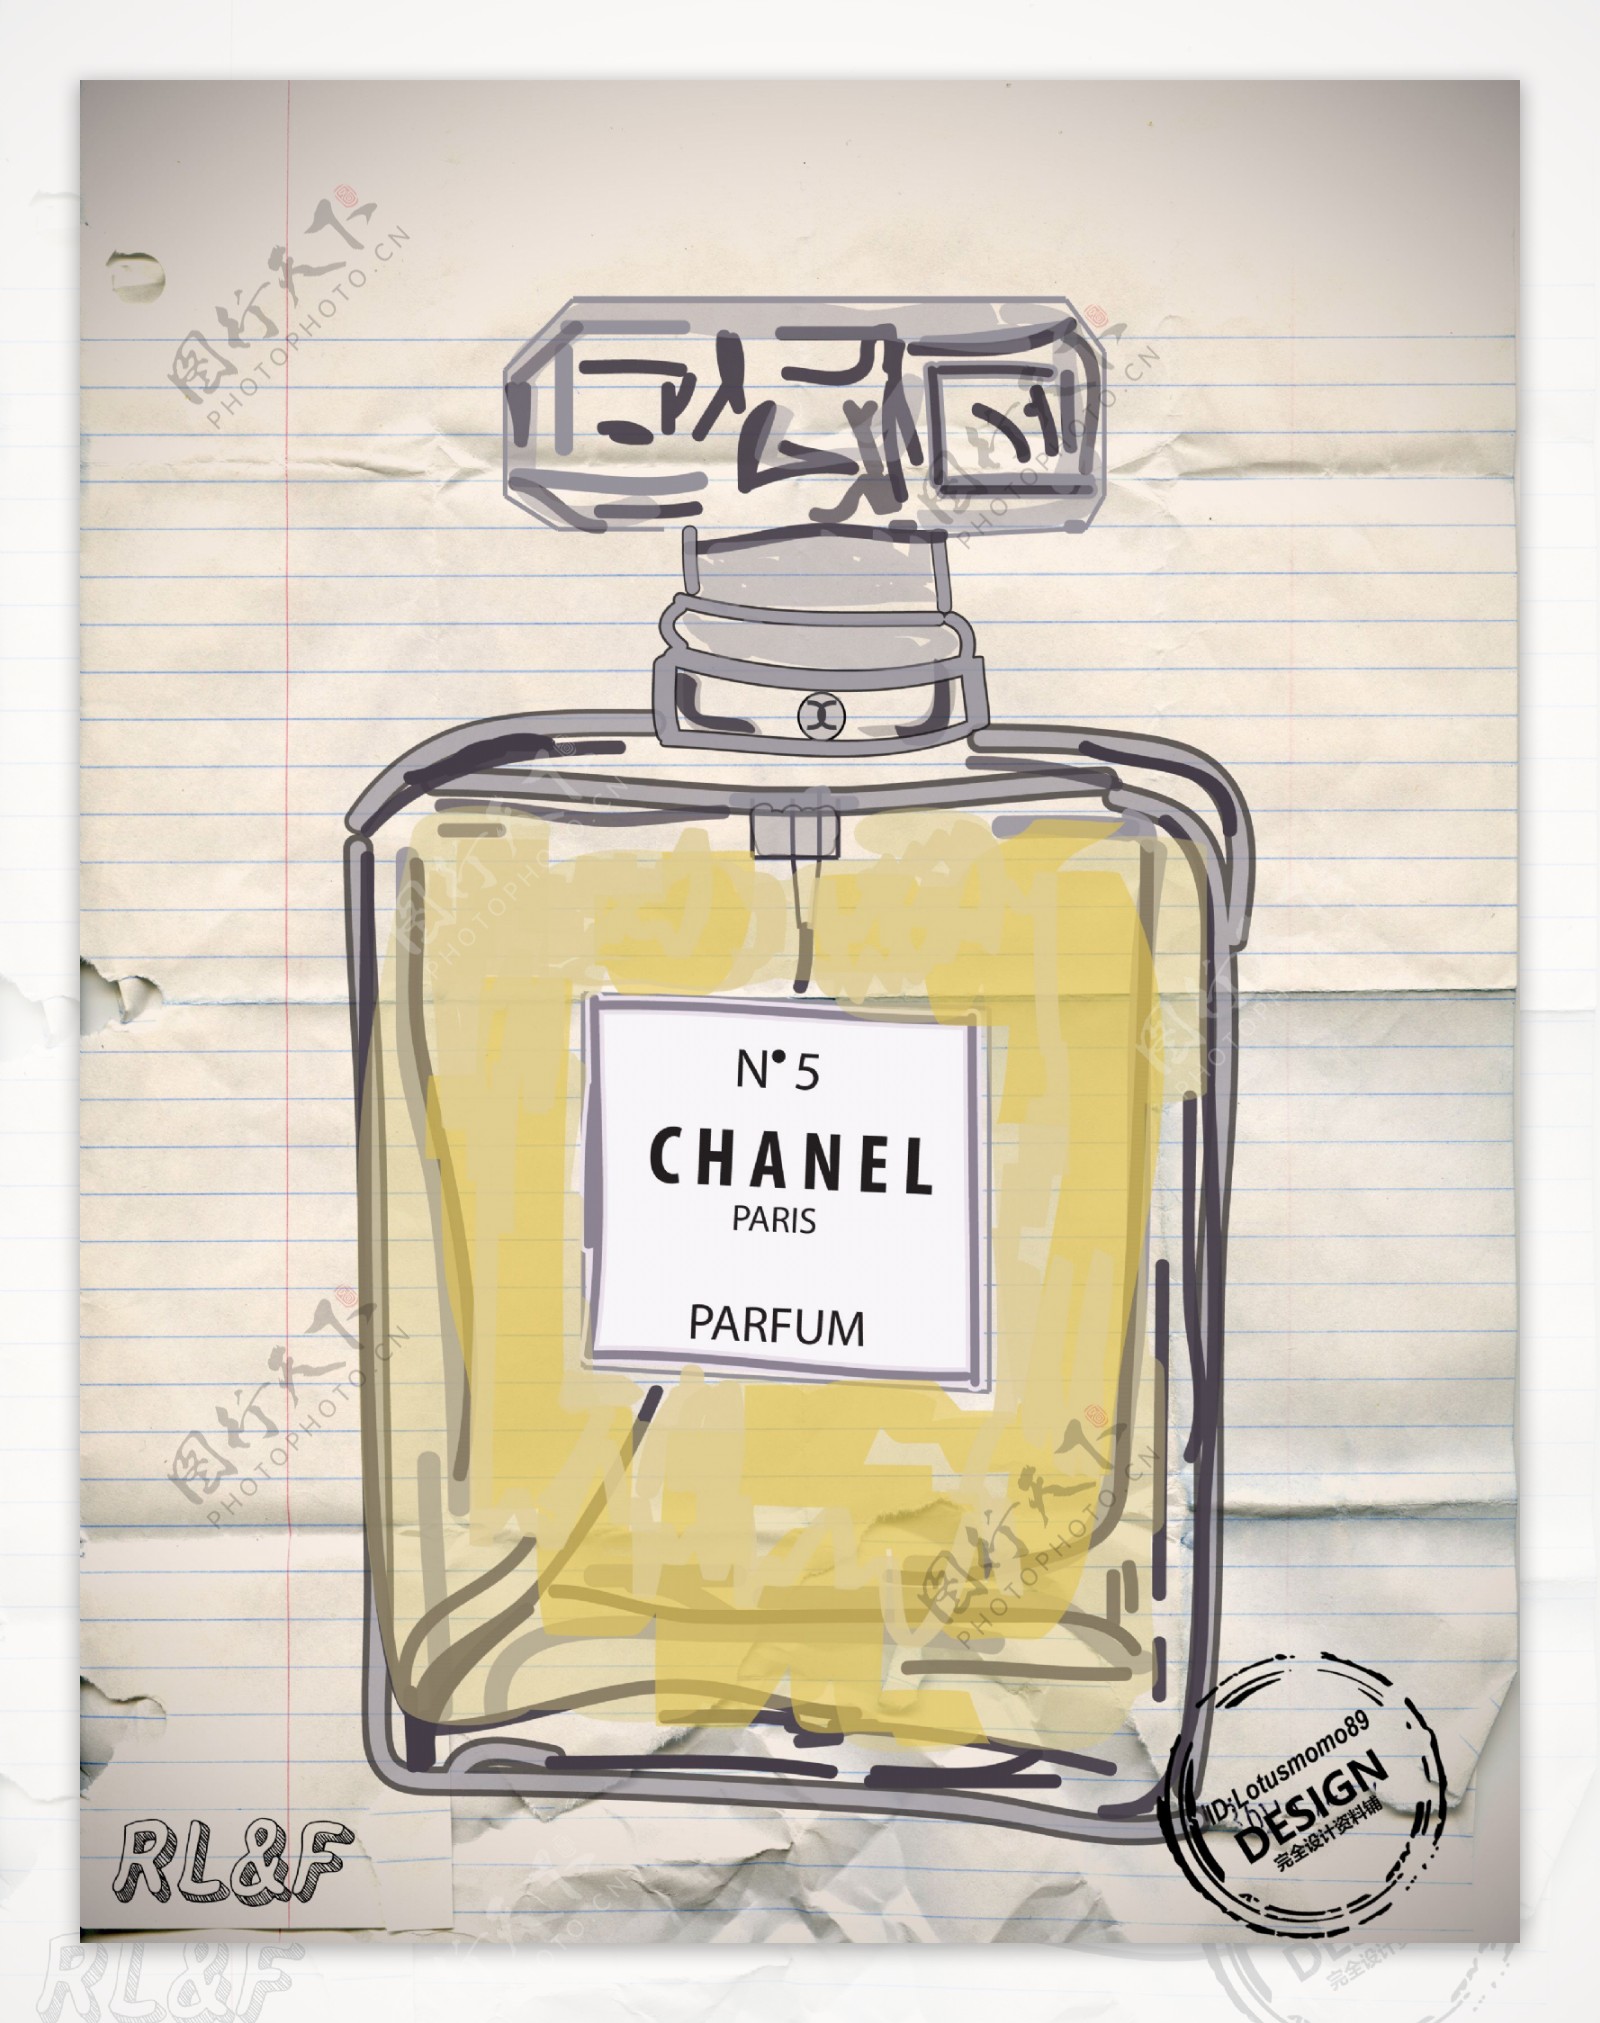 chanel香水大师手绘图片设计手稿图